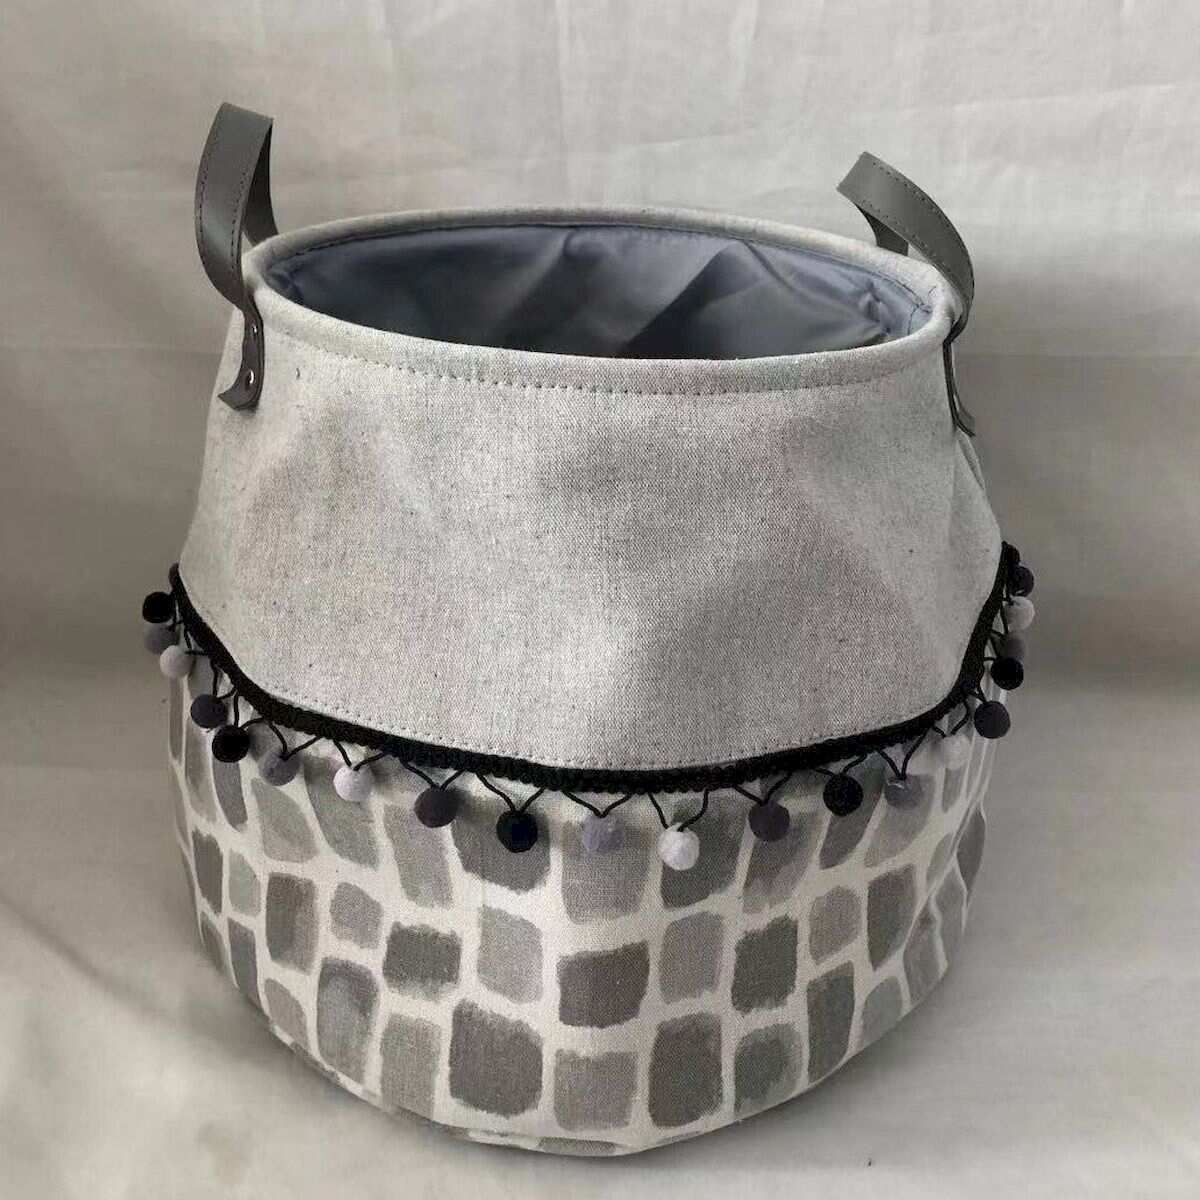 Gray Top With Gray Squares And Black Pom Pom Trim Handled Basket